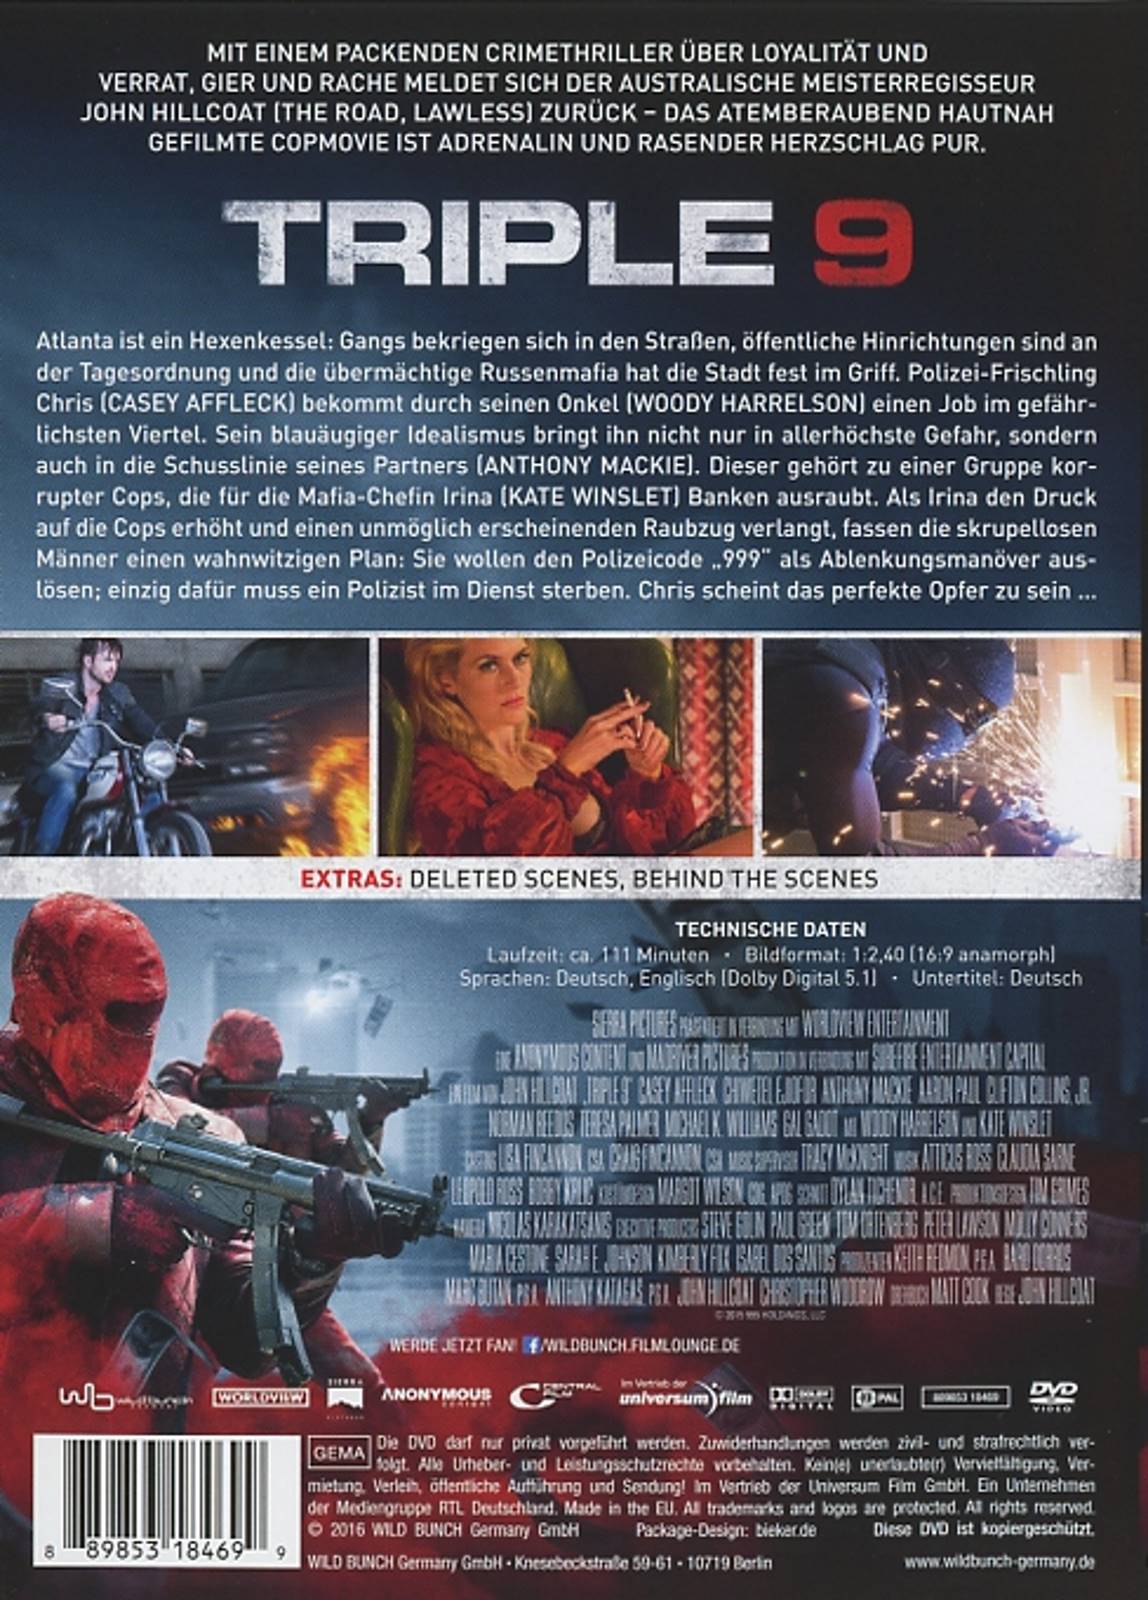 Triple 9 - Ein tödlicher Coup